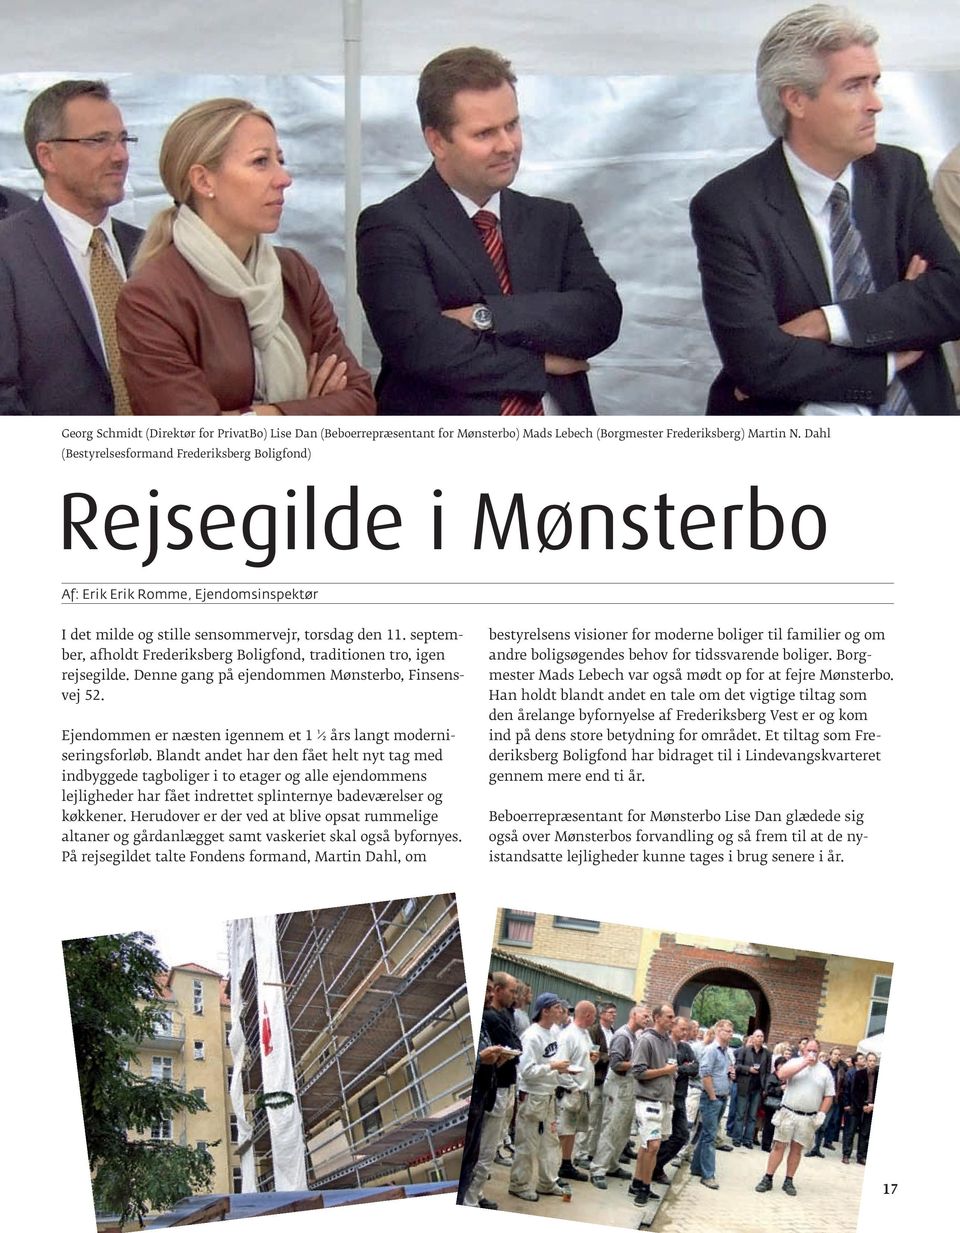 september, afholdt Frederiksberg Boligfond, traditionen tro, igen rejsegilde. Denne gang på ejendommen Mønsterbo, Finsensvej 52. Ejendommen er næsten igennem et 1 ½ års langt moderniseringsforløb.